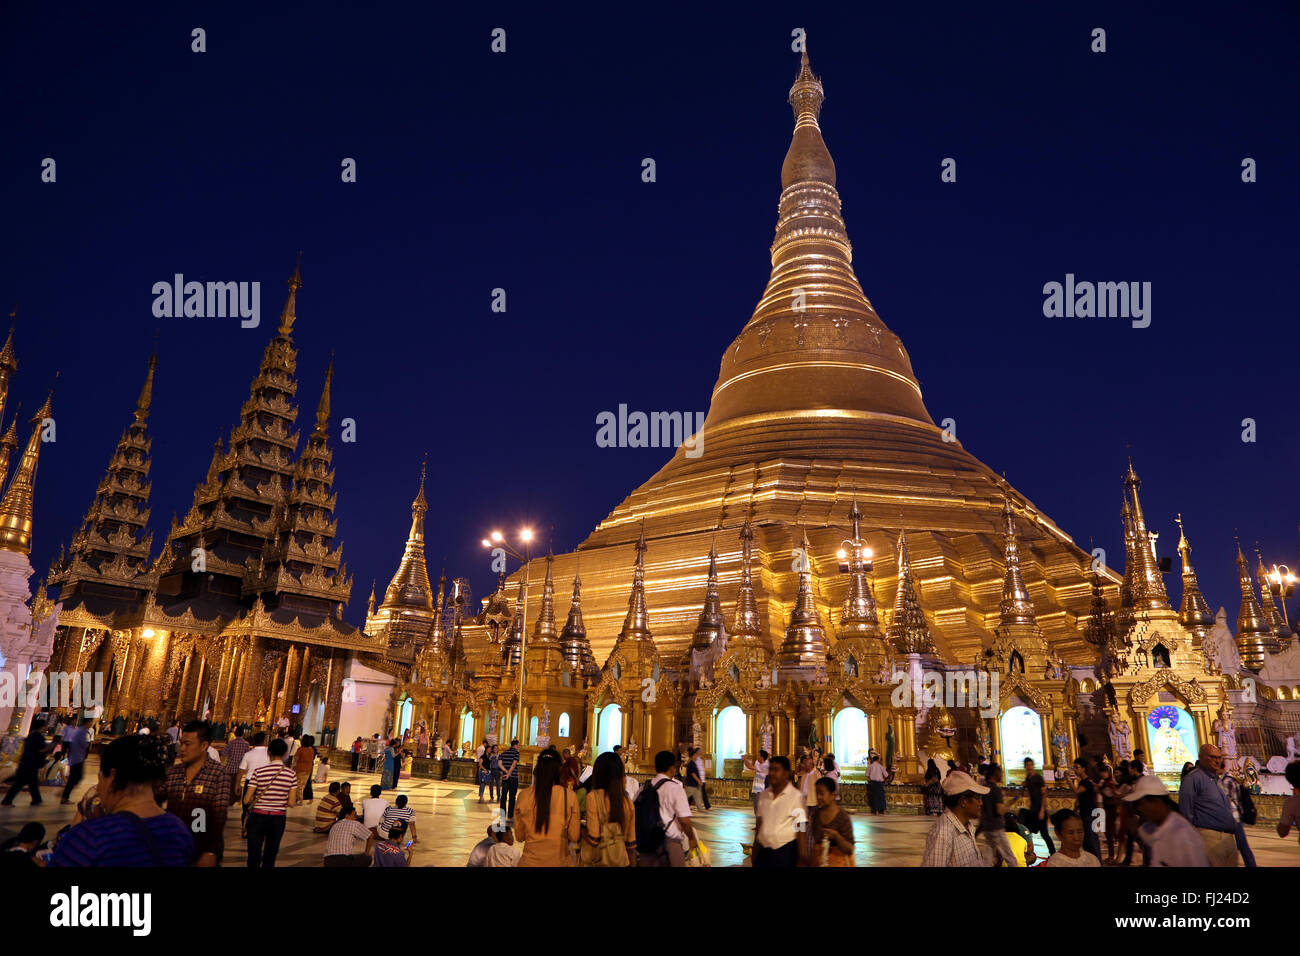 Shwedagon pagoda by night, Rangoon, Myanmar Stock Photo